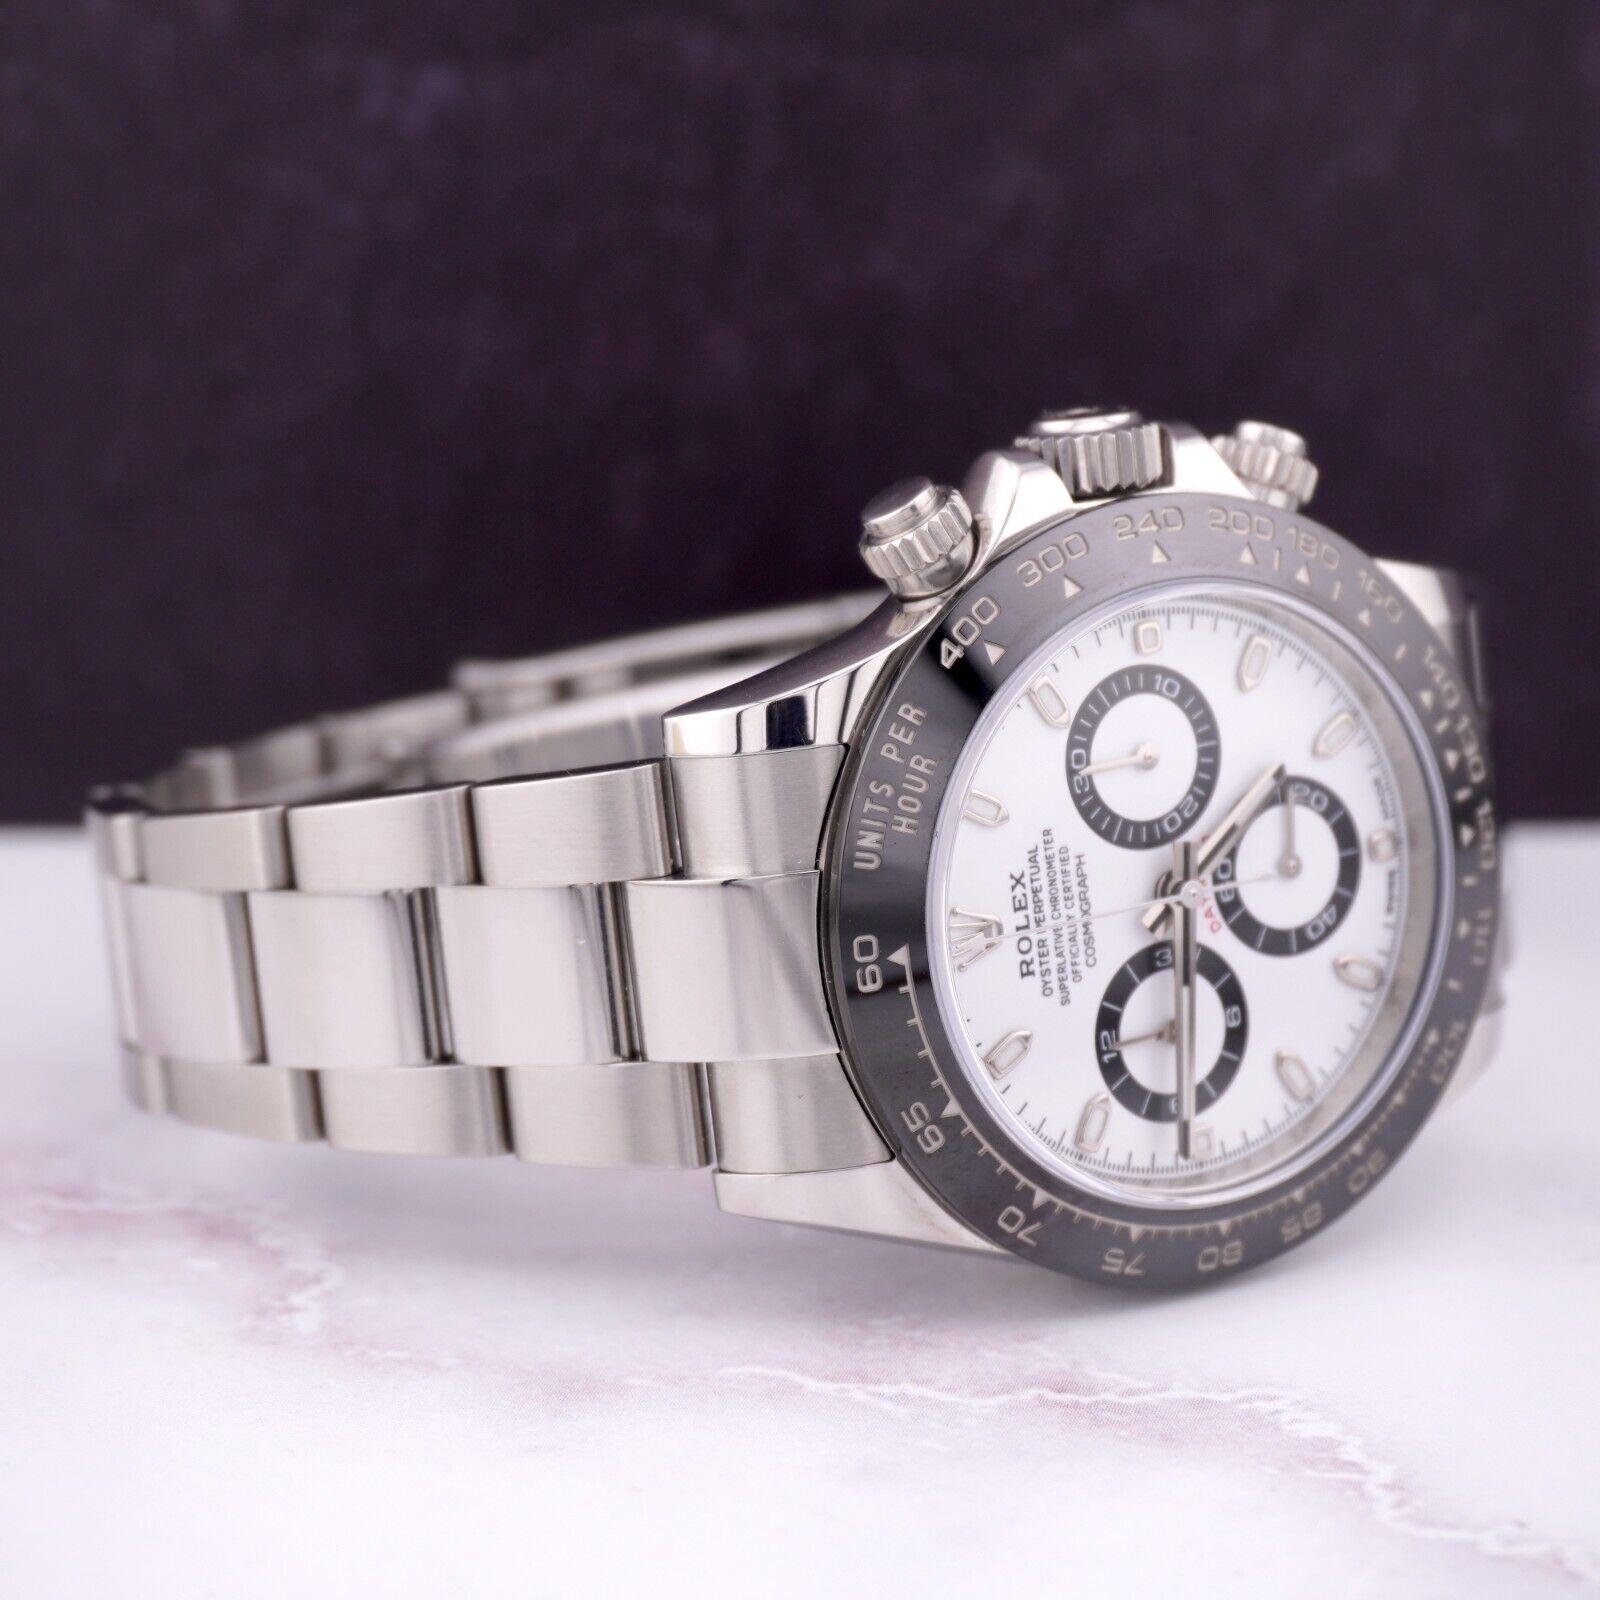 Rolex Daytona Panda 40mm Uhr. Ein Pre-owned Uhr w / Original-Box und 2018 Karte. Uhr ist 100% authentisch und kommt mit Echtheitskarte. Watch Reference ist 116500LN und ist in ausgezeichnetem Zustand (siehe Bilder). Das Zifferblatt hat die Farben